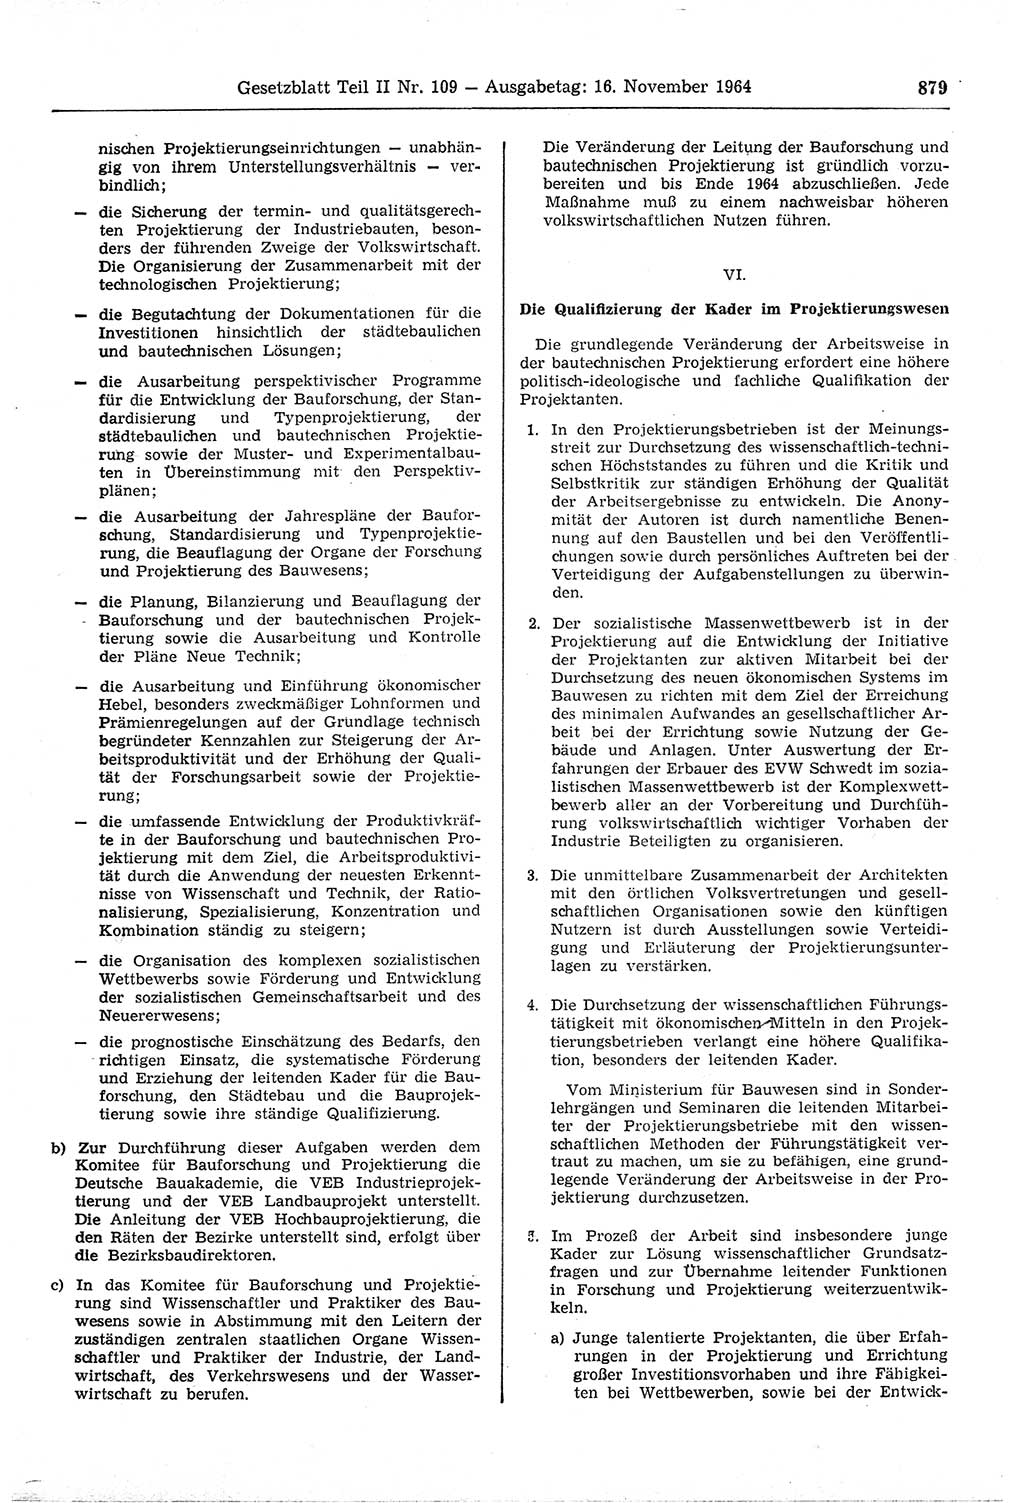 Gesetzblatt (GBl.) der Deutschen Demokratischen Republik (DDR) Teil ⅠⅠ 1964, Seite 879 (GBl. DDR ⅠⅠ 1964, S. 879)